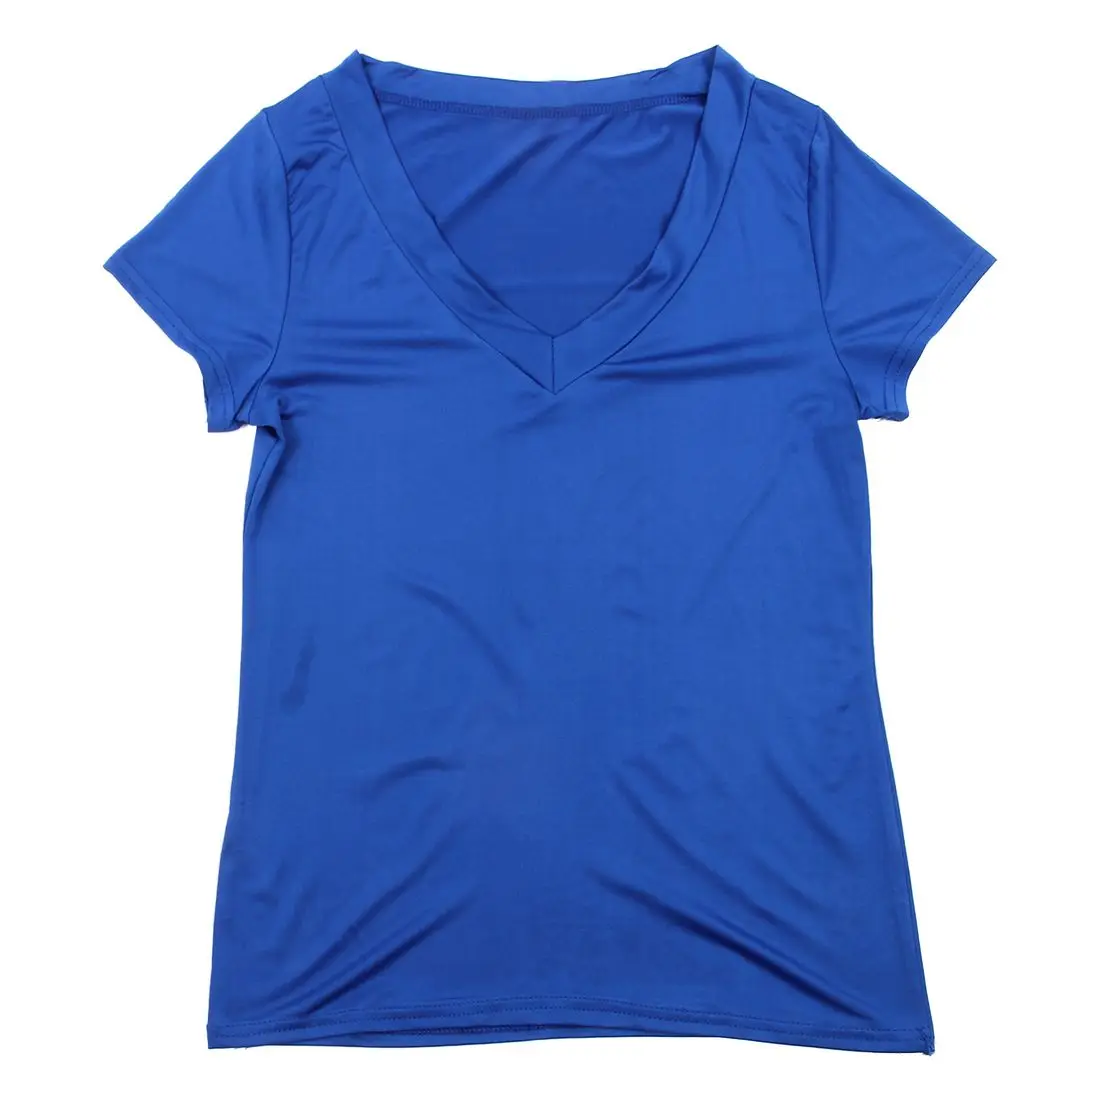 Хит продаж высокое качество Чистый Цвет Футболка короткий рукав Sexy Глубокий V шеи Для женщин футболка Повседневная рубашка